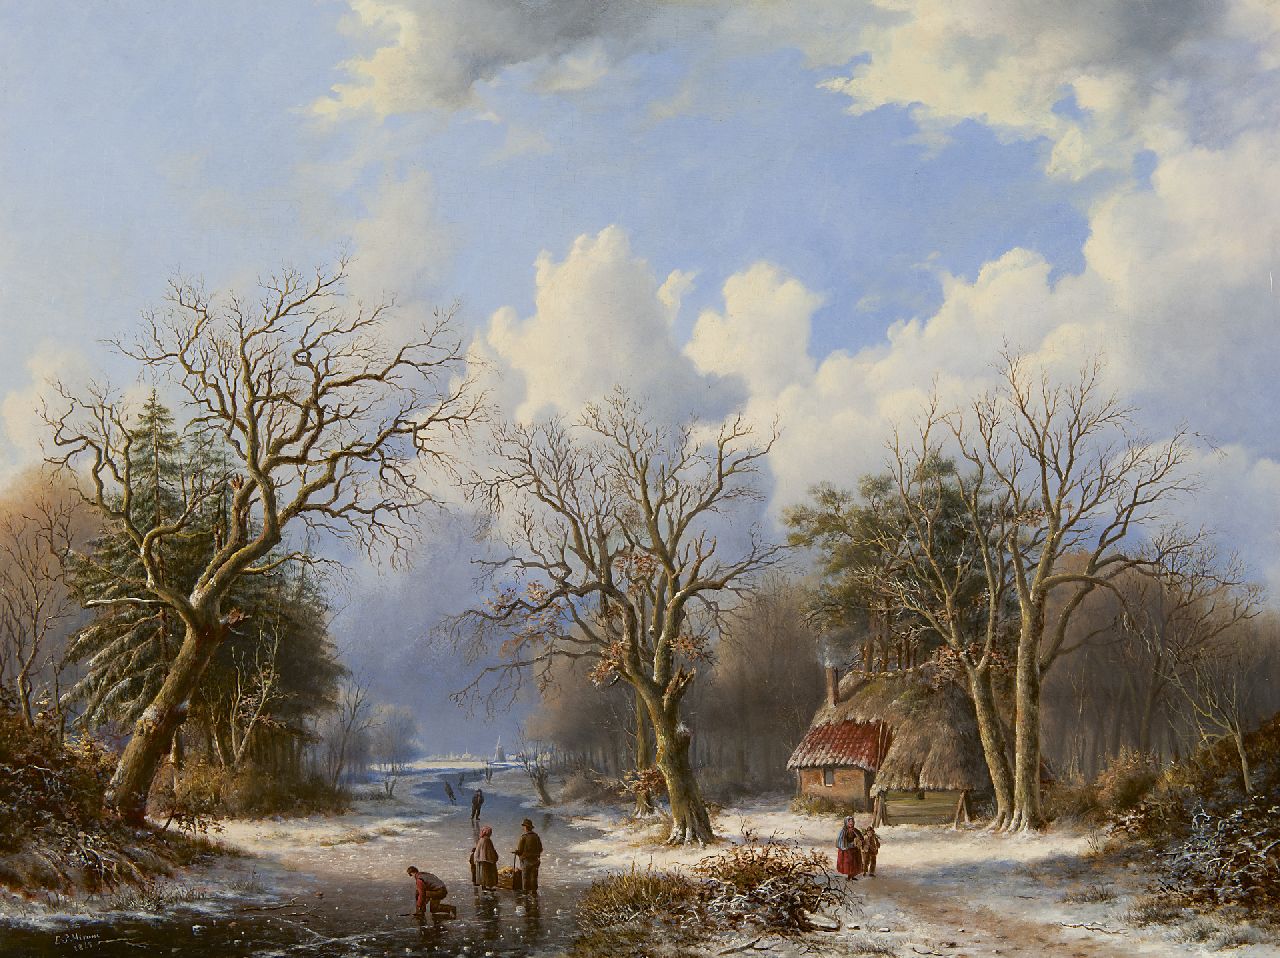 Mirani E.B.G.P.  | 'Everardus' Benedictus Gregorius Pagano Mirani, Winterlandschap met schaatsers op bevroren rivier, olieverf op paneel 47,5 x 62,5 cm, gesigneerd linksonder en gedateerd 1845